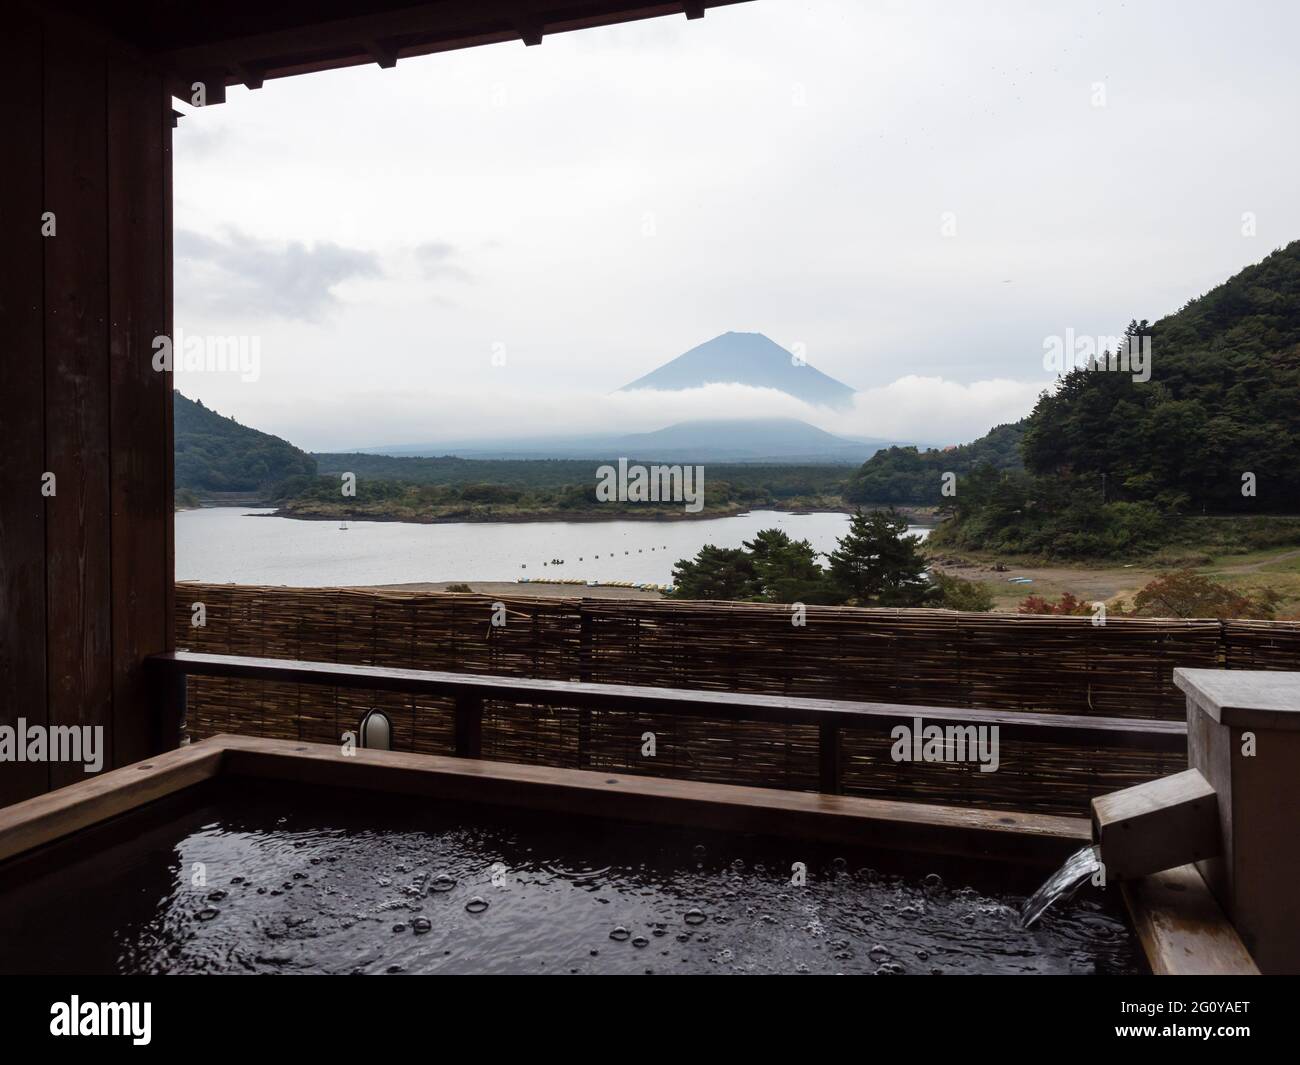 Fujikawaguchiko, Giappone - 17 Ottobre 2017: Vista del Lago Shoji e del Monte Fuji dal bagno termale all'aperto dell'Hotel Yamadaya Foto Stock